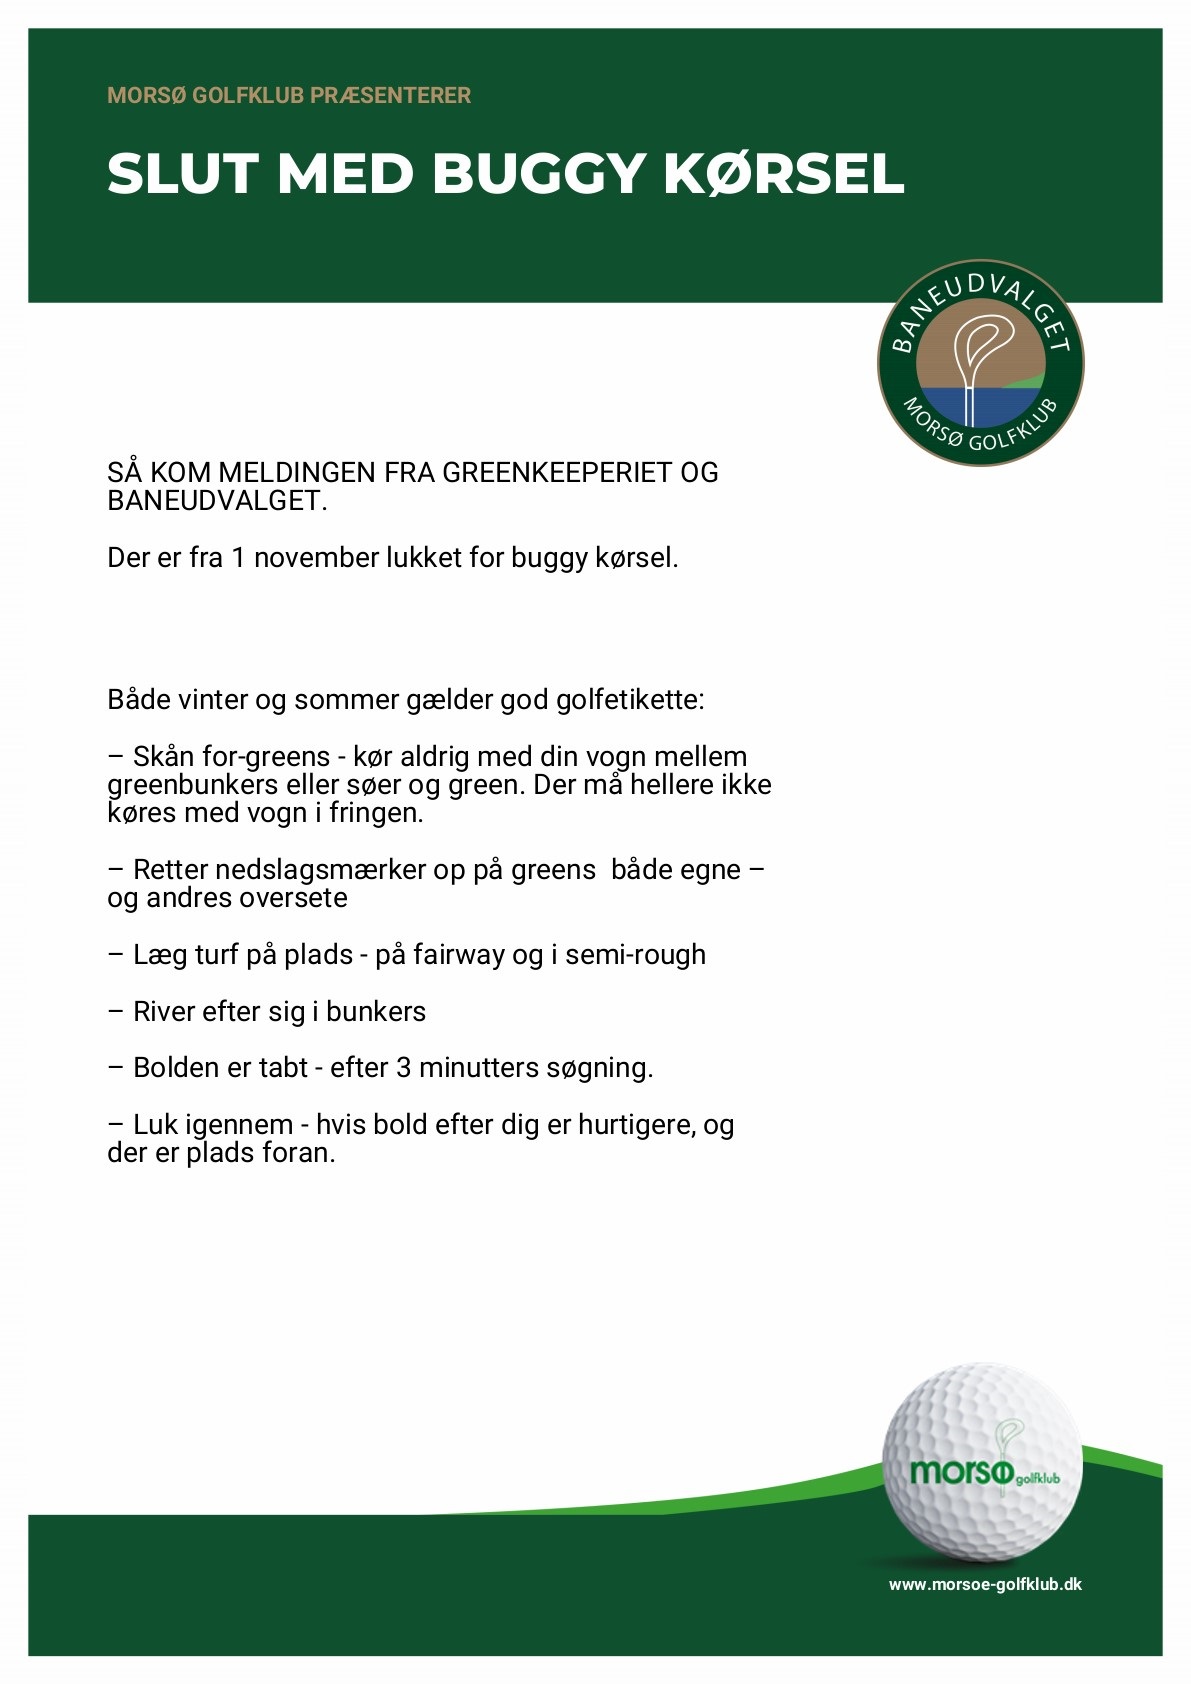 Ny info omkring buggy kørsel. | Morsø Golfklub